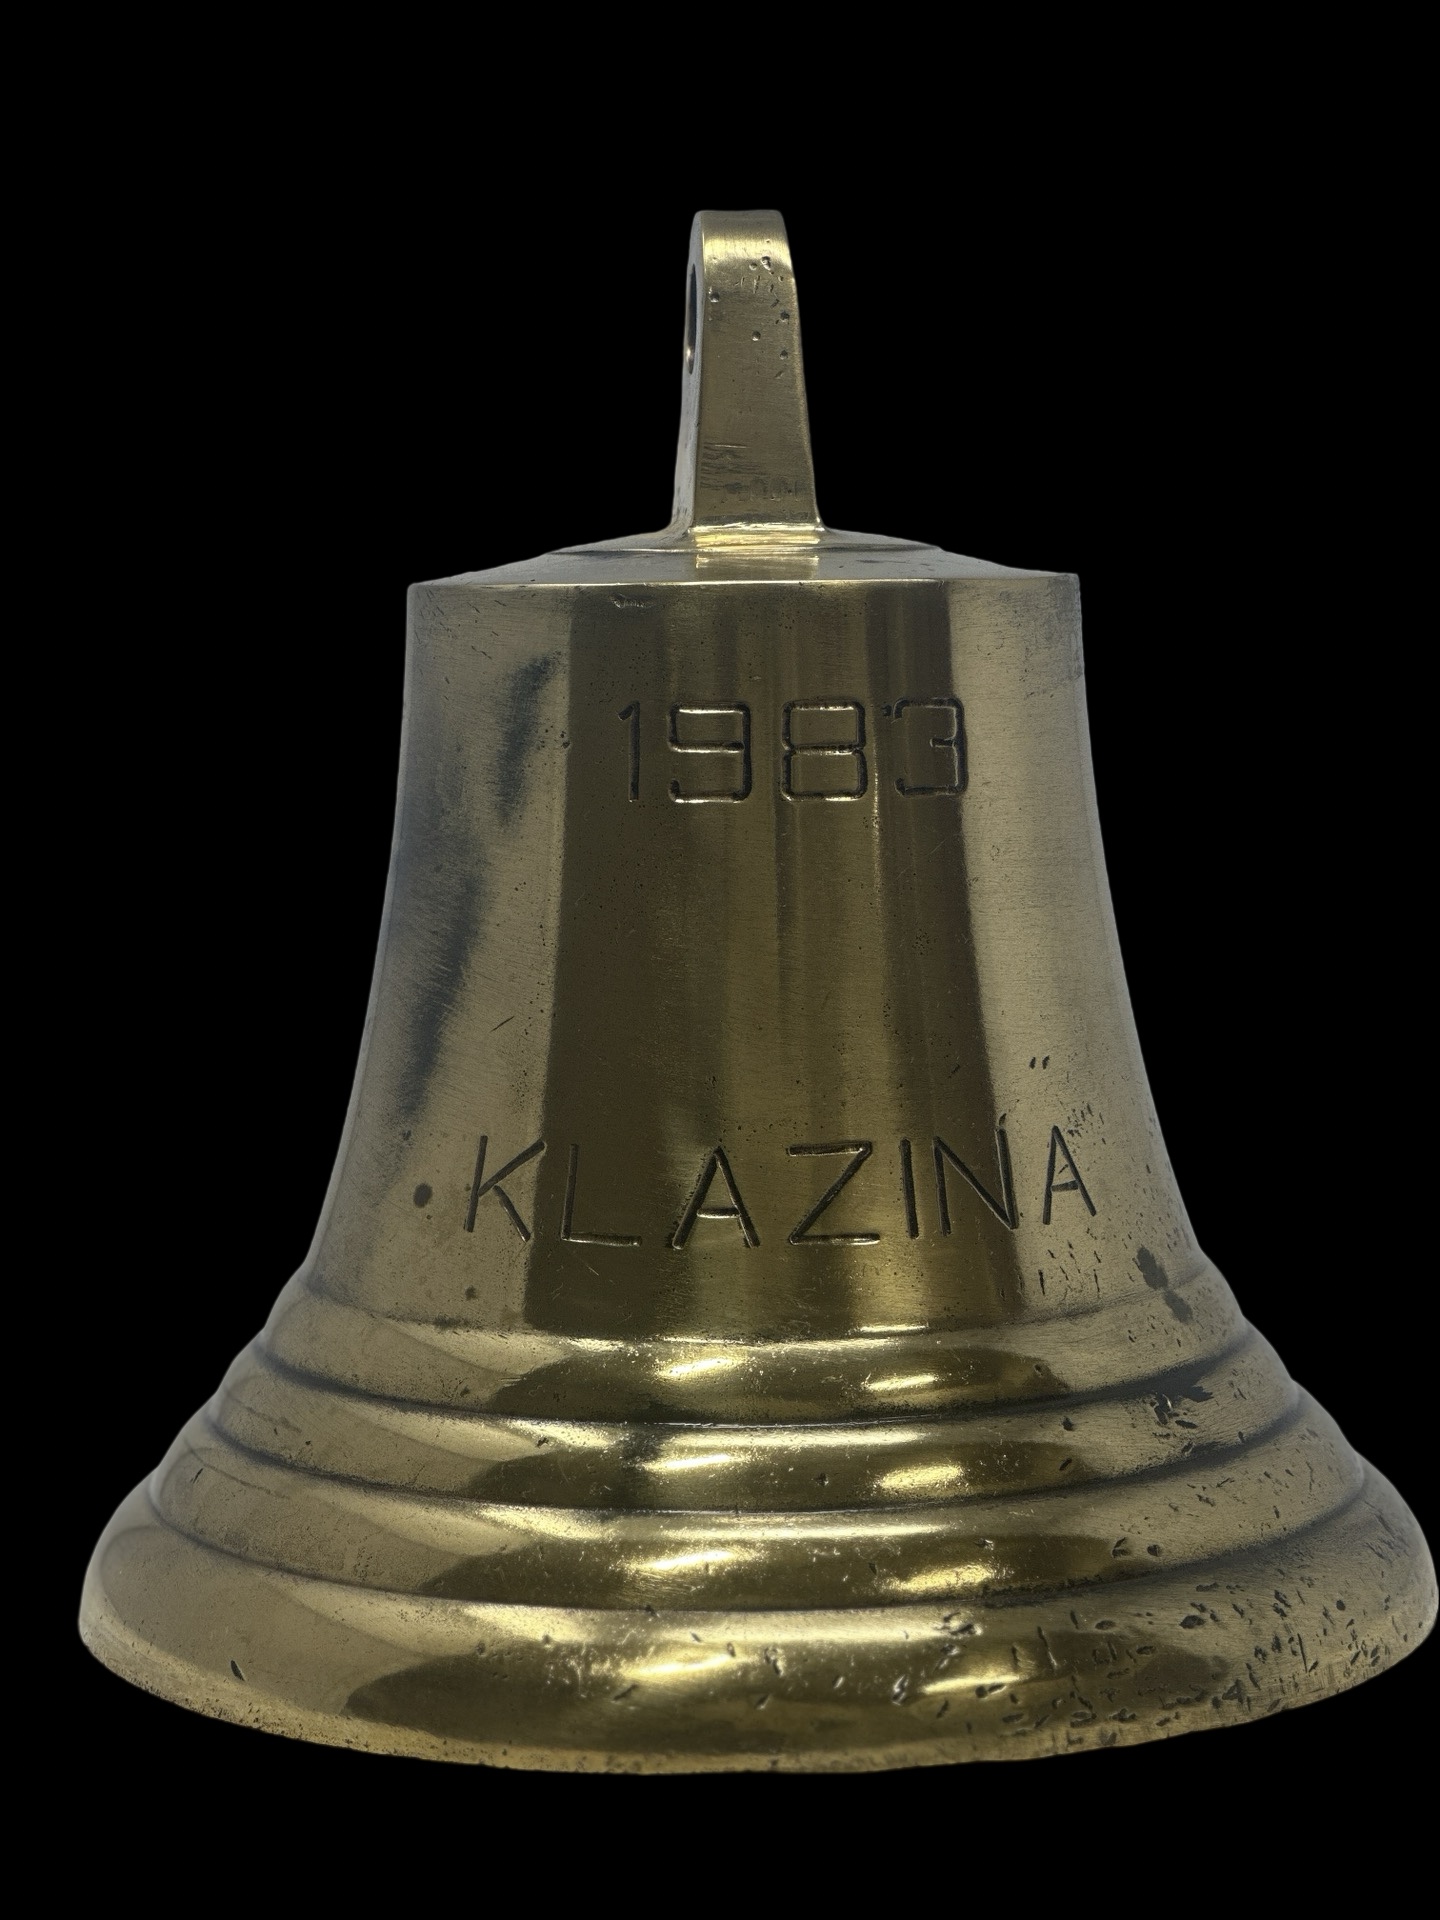 Brass bell with "1983 KLAZNA" inscription.